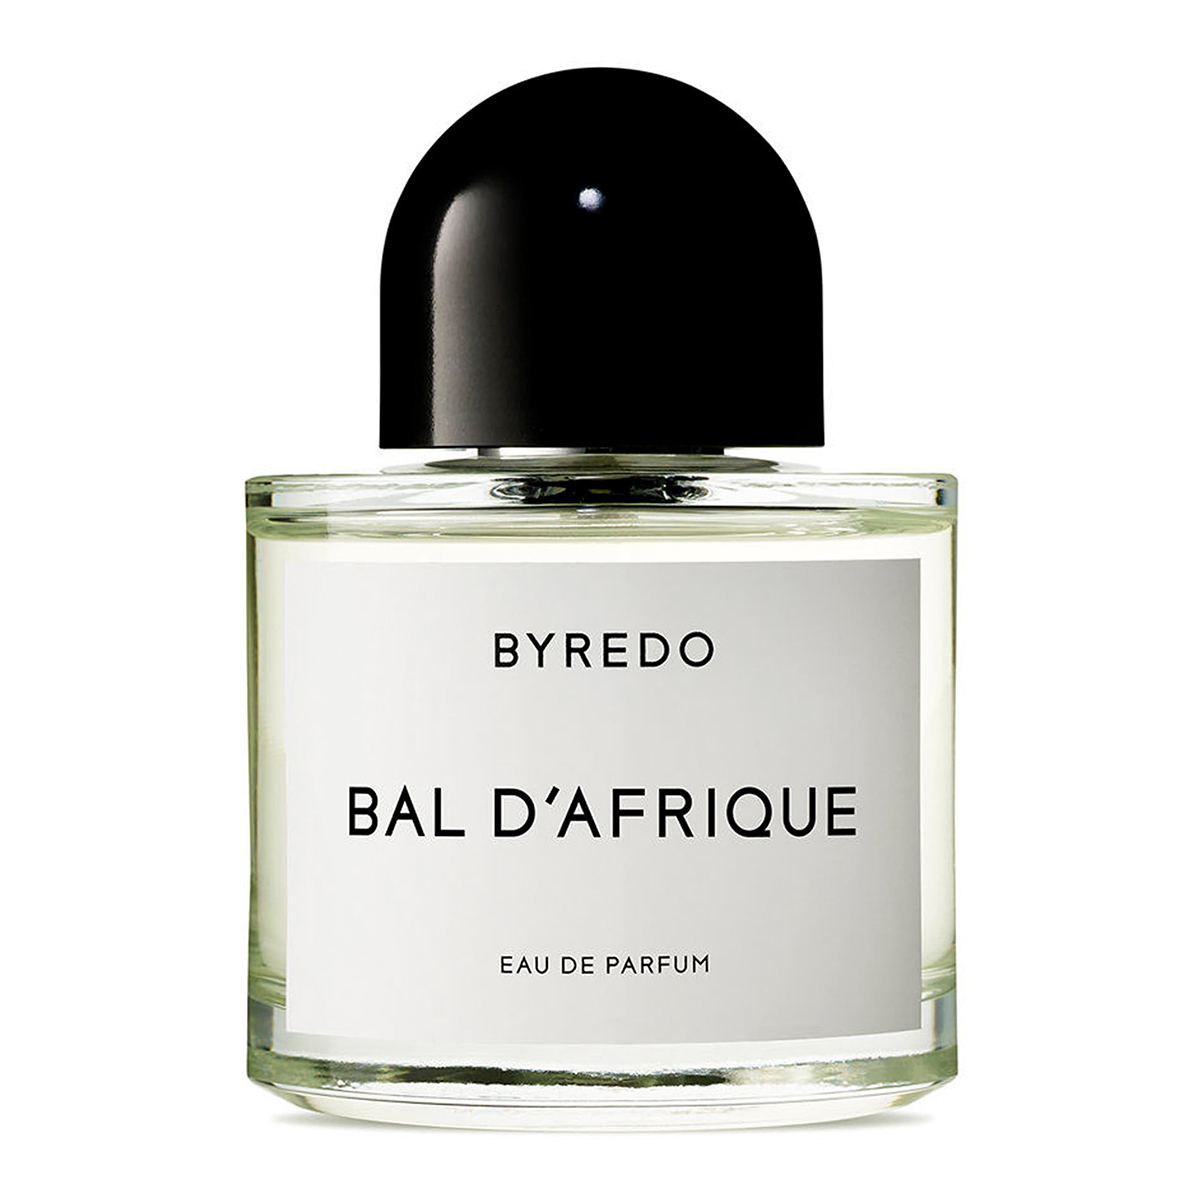 Byredo Bal d'Afrique Eau de Parfum, 50ml